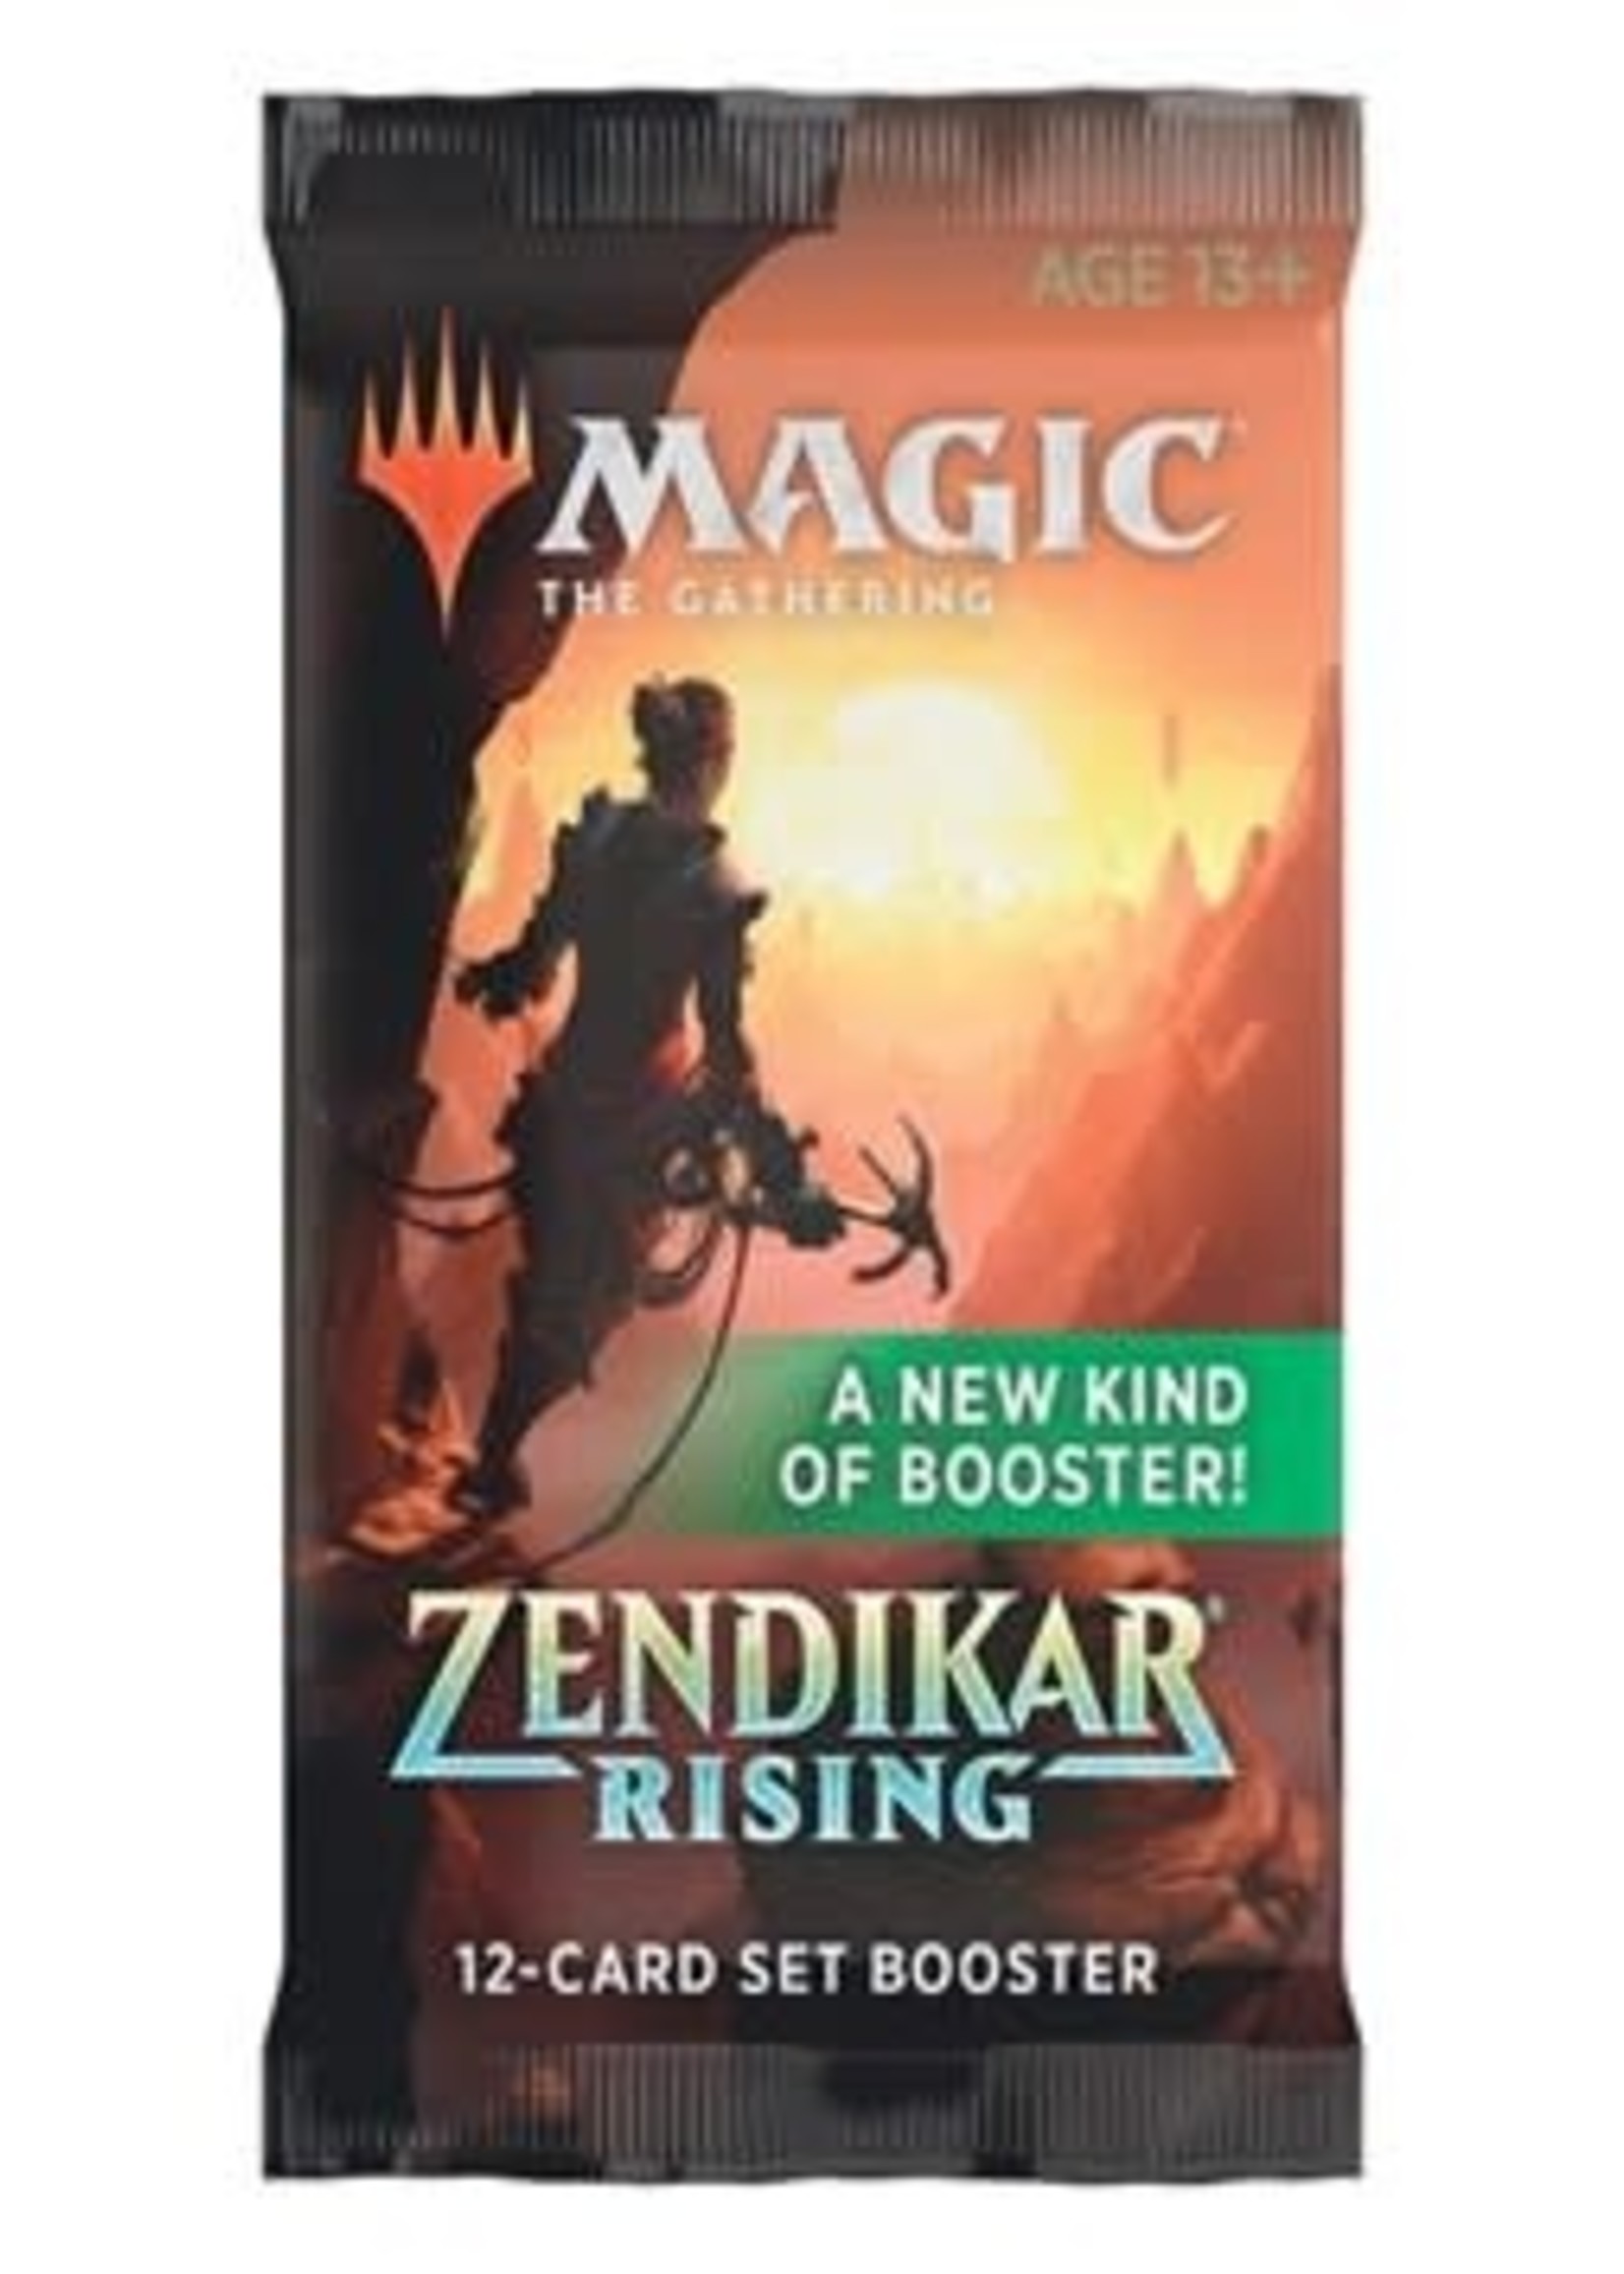 Wizards of the Coast Zendikar Rising Set Booster Pack